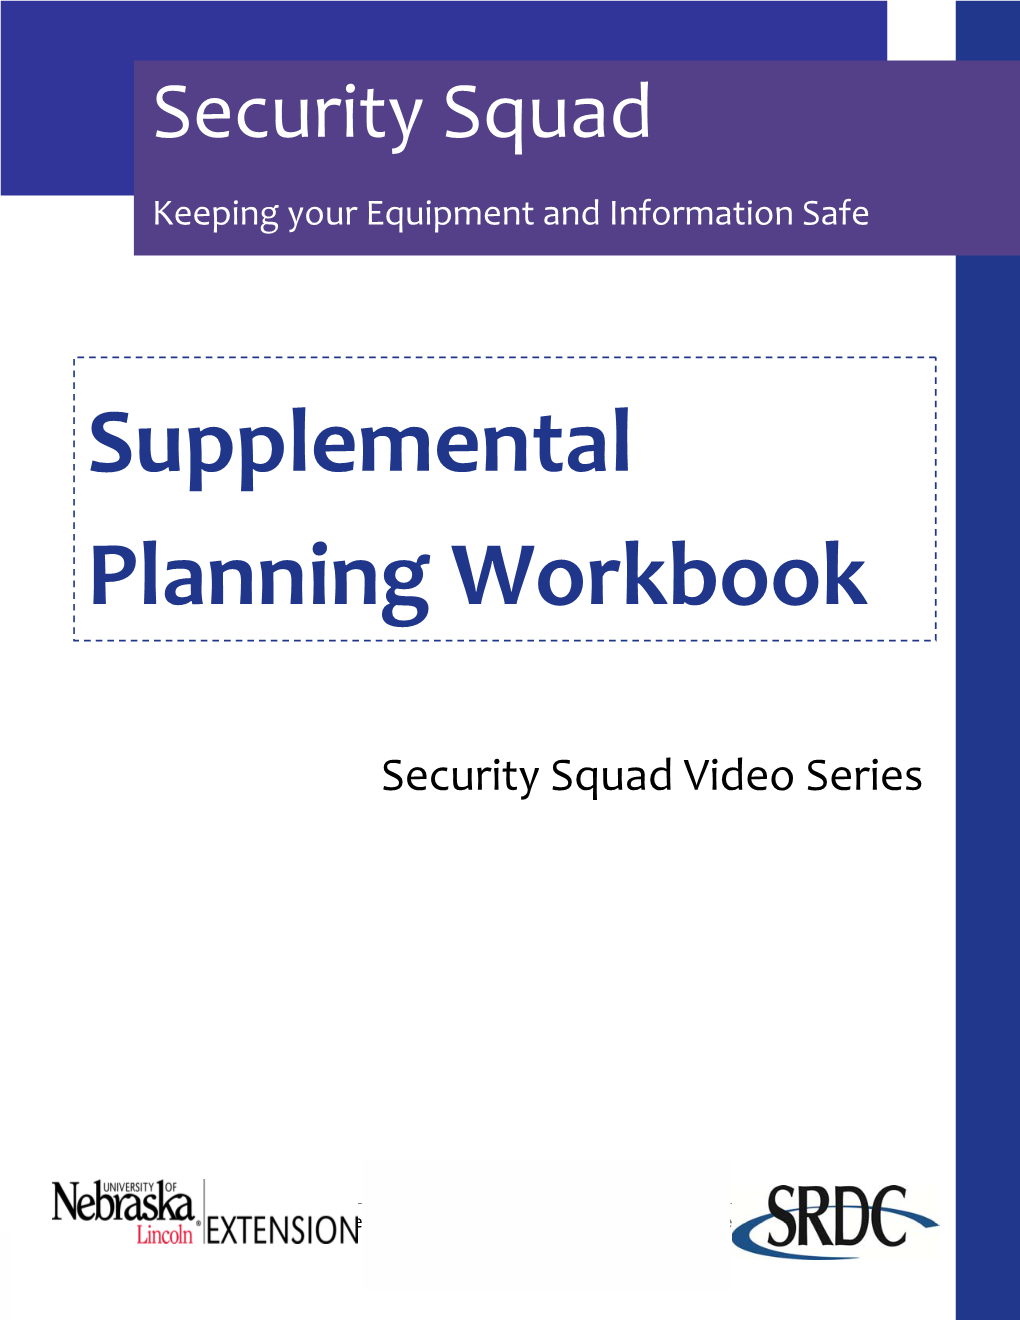 Supplemental Planning Workbook